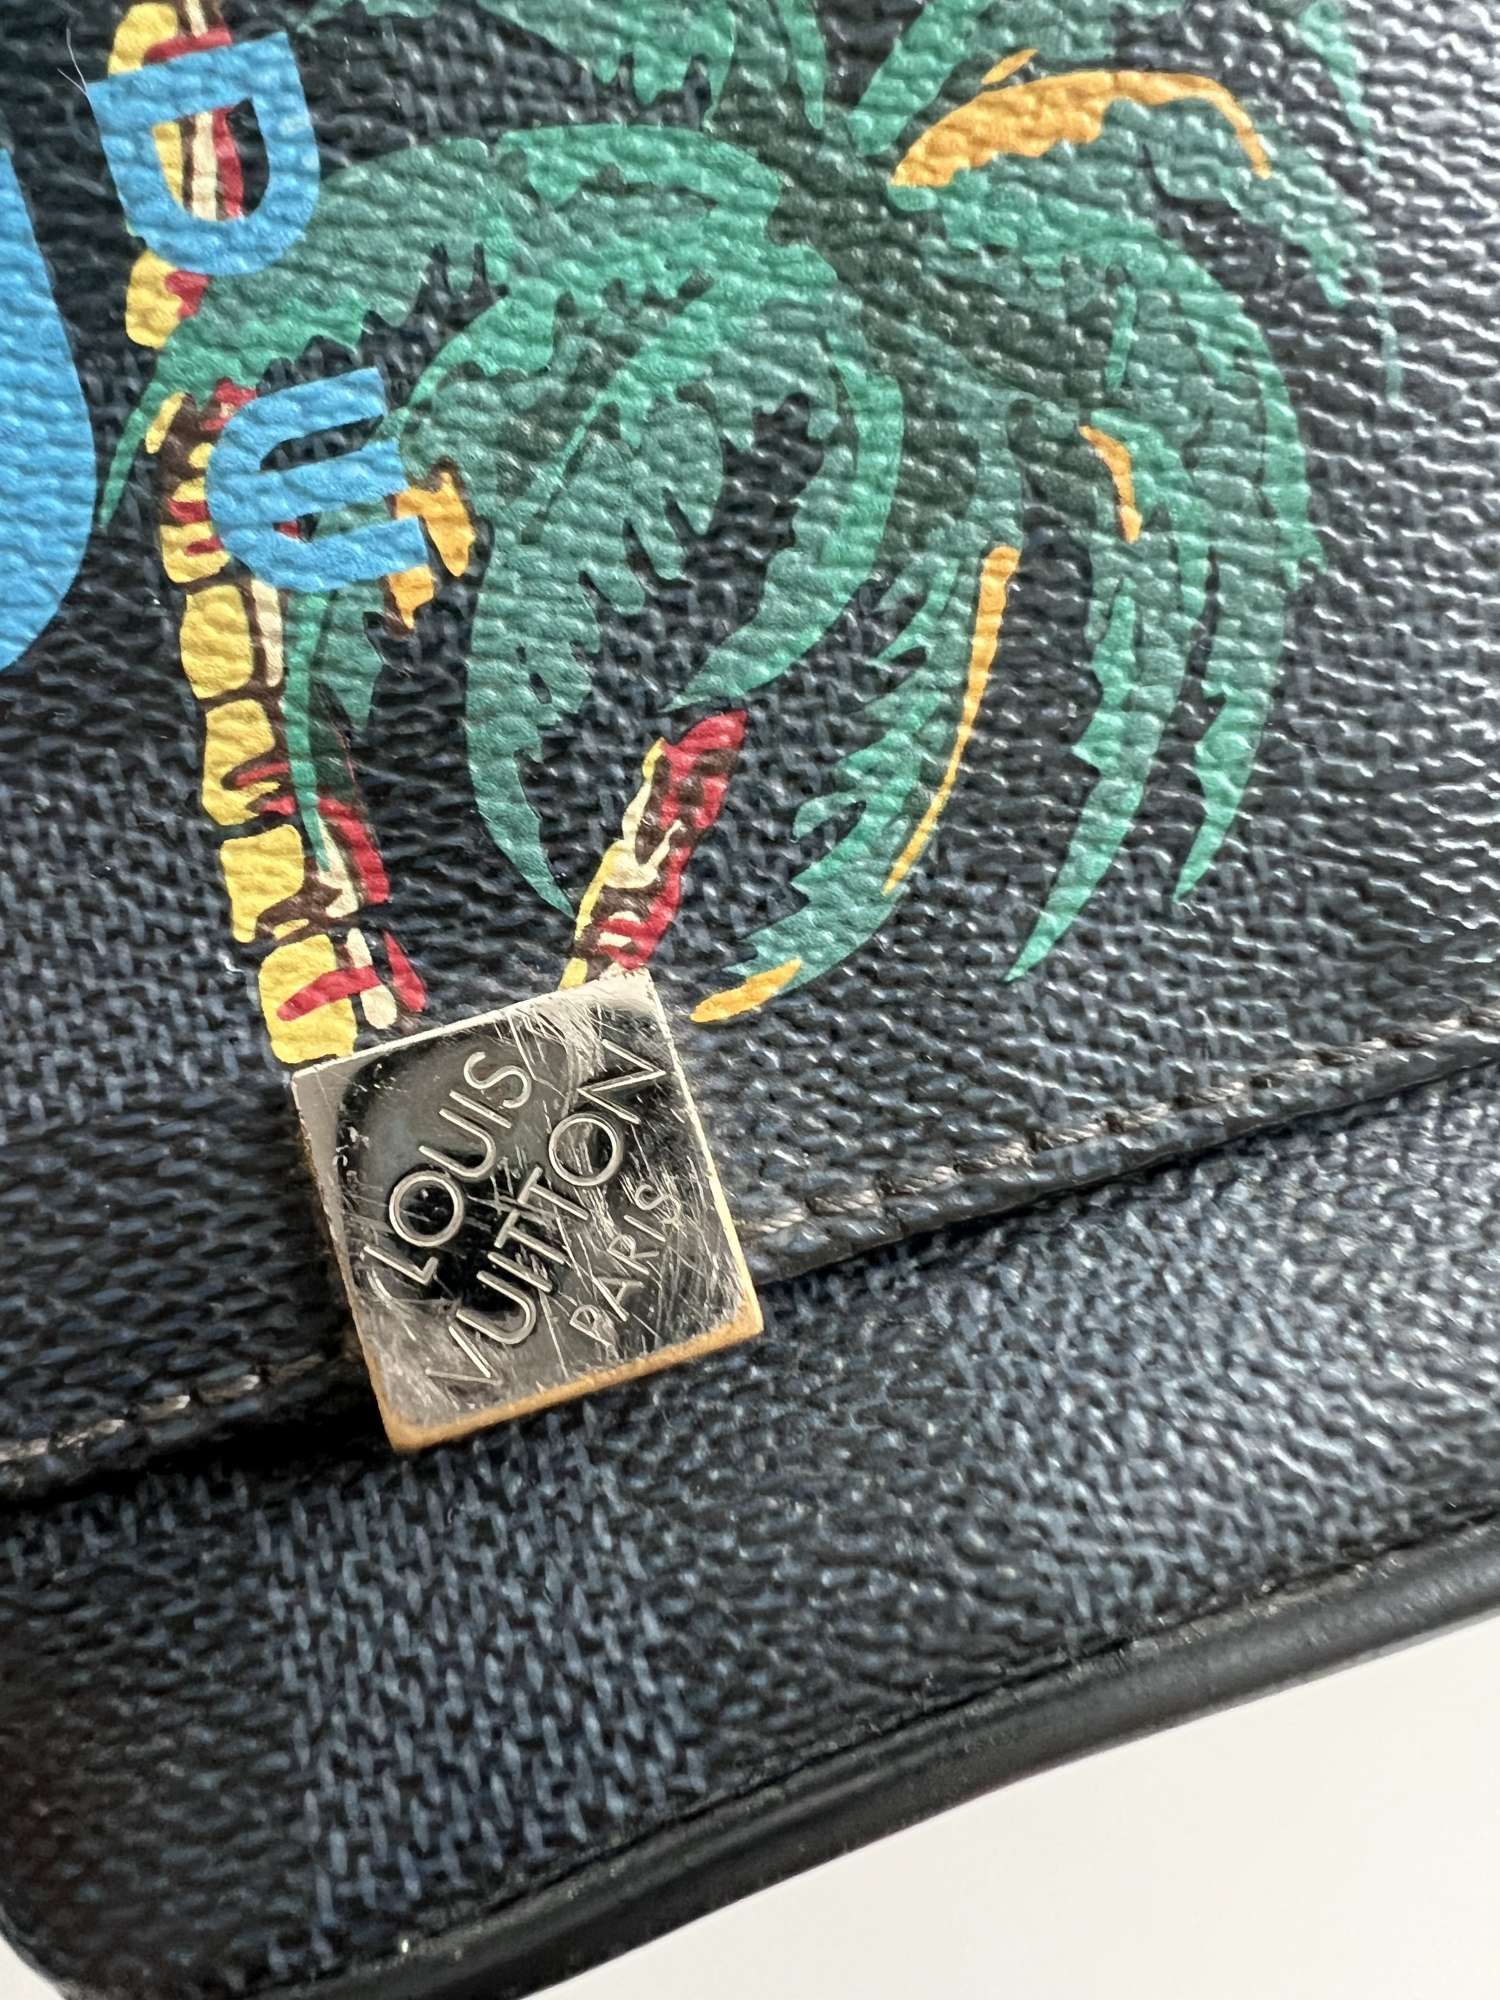 Louis Vuitton panska taska na plece